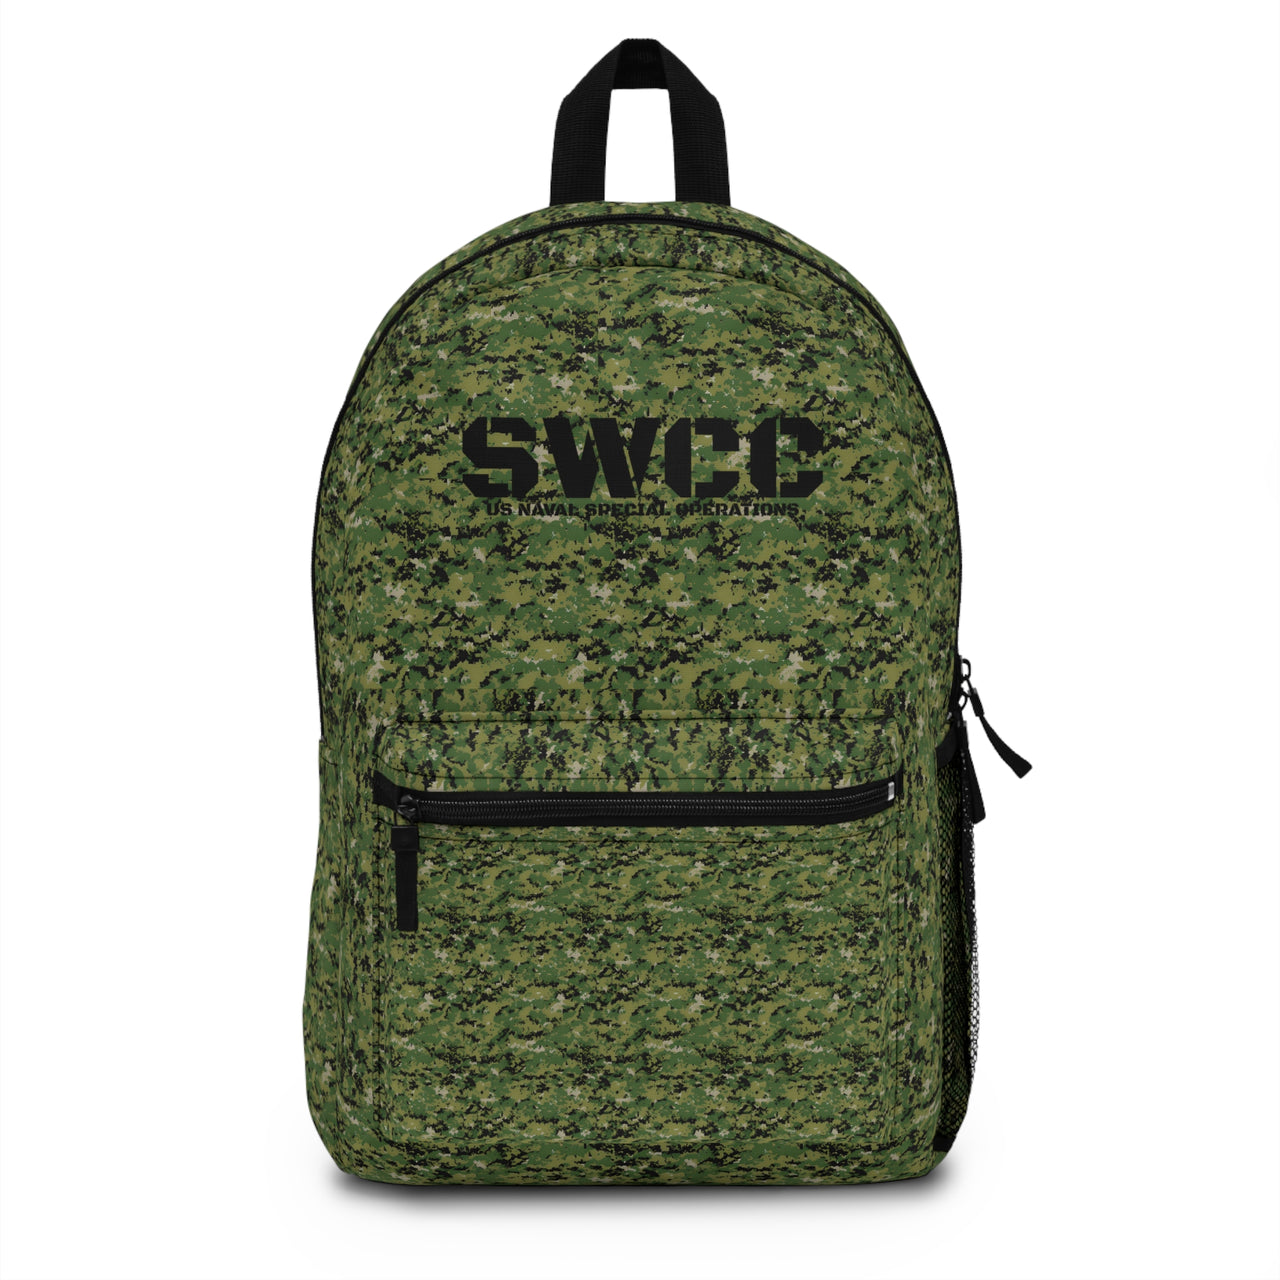 SWCC Backpack